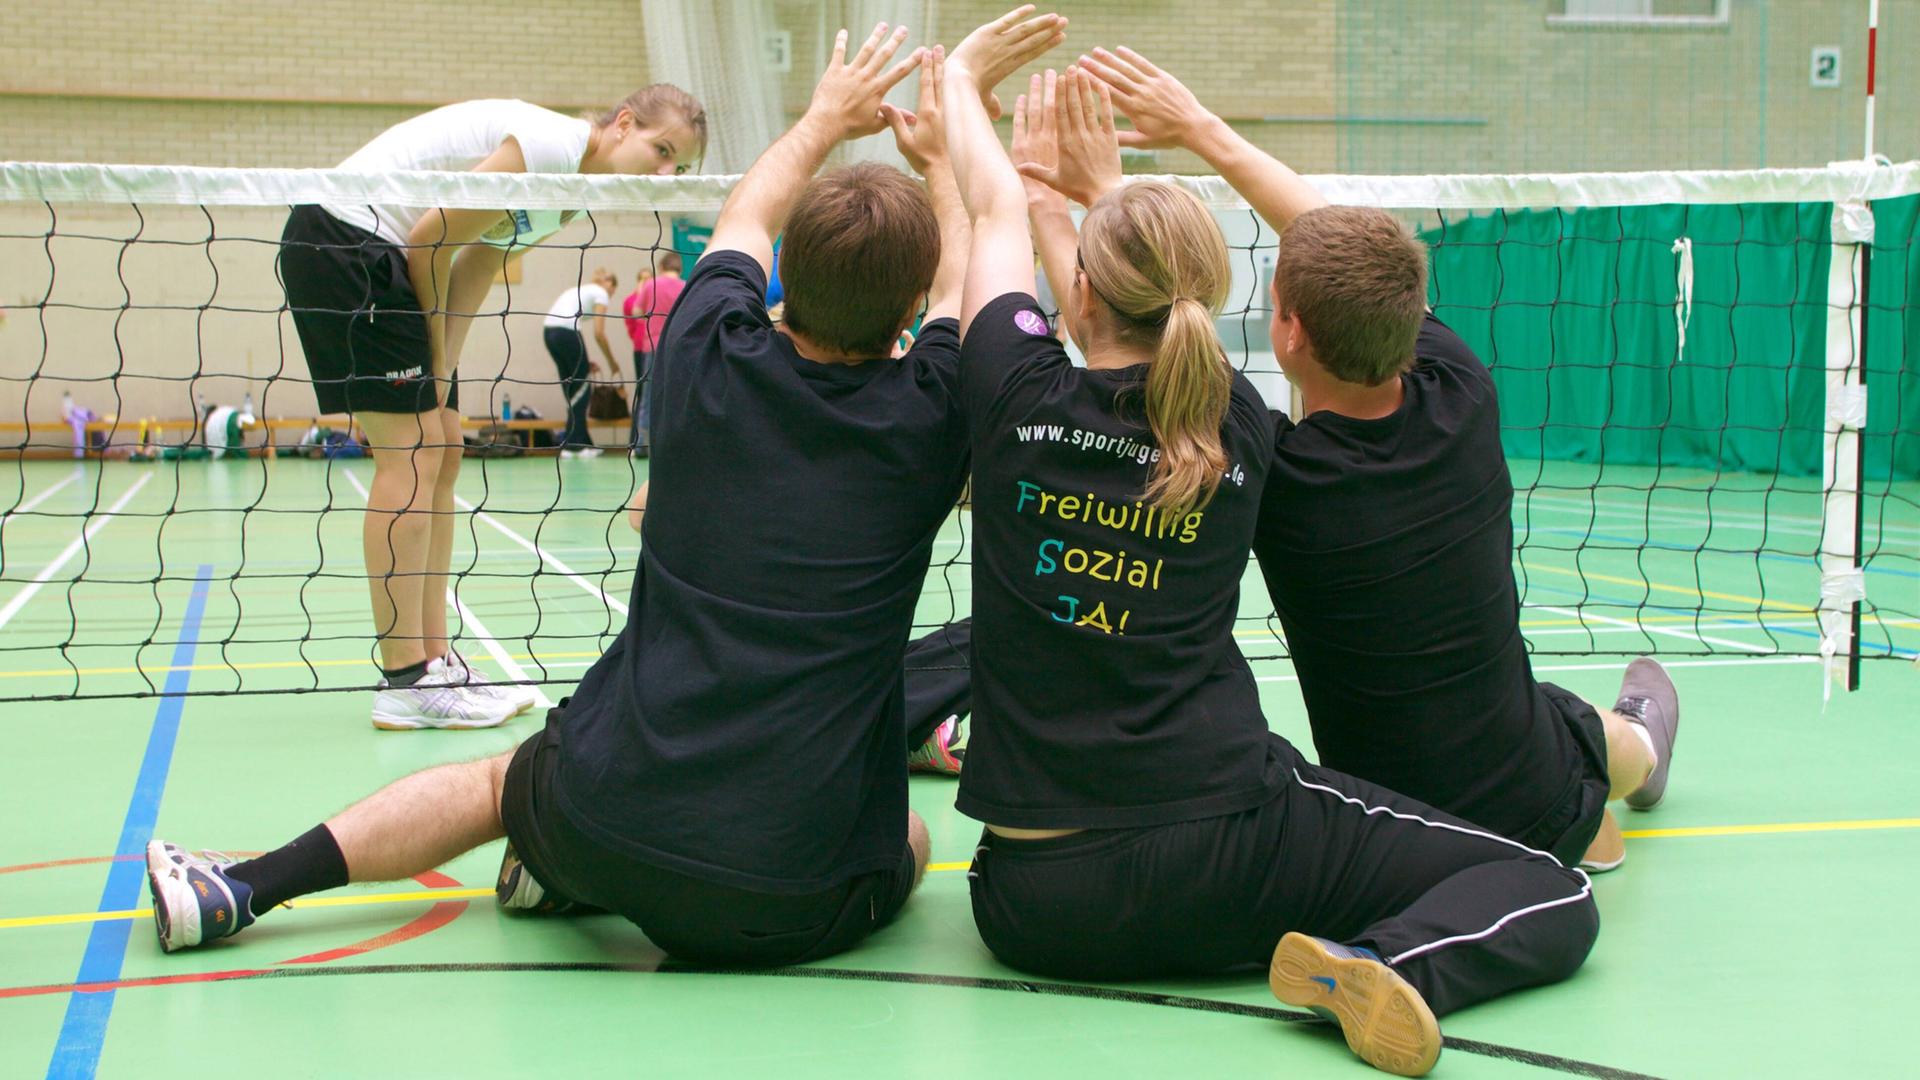 Jugendliche spielen Sitzvolleyball mit Menschen mit Behinderung. Seit 20 Jahren können Jugendliche auch in Sportvereinen ein freiwilliges soziales Jahr machen.